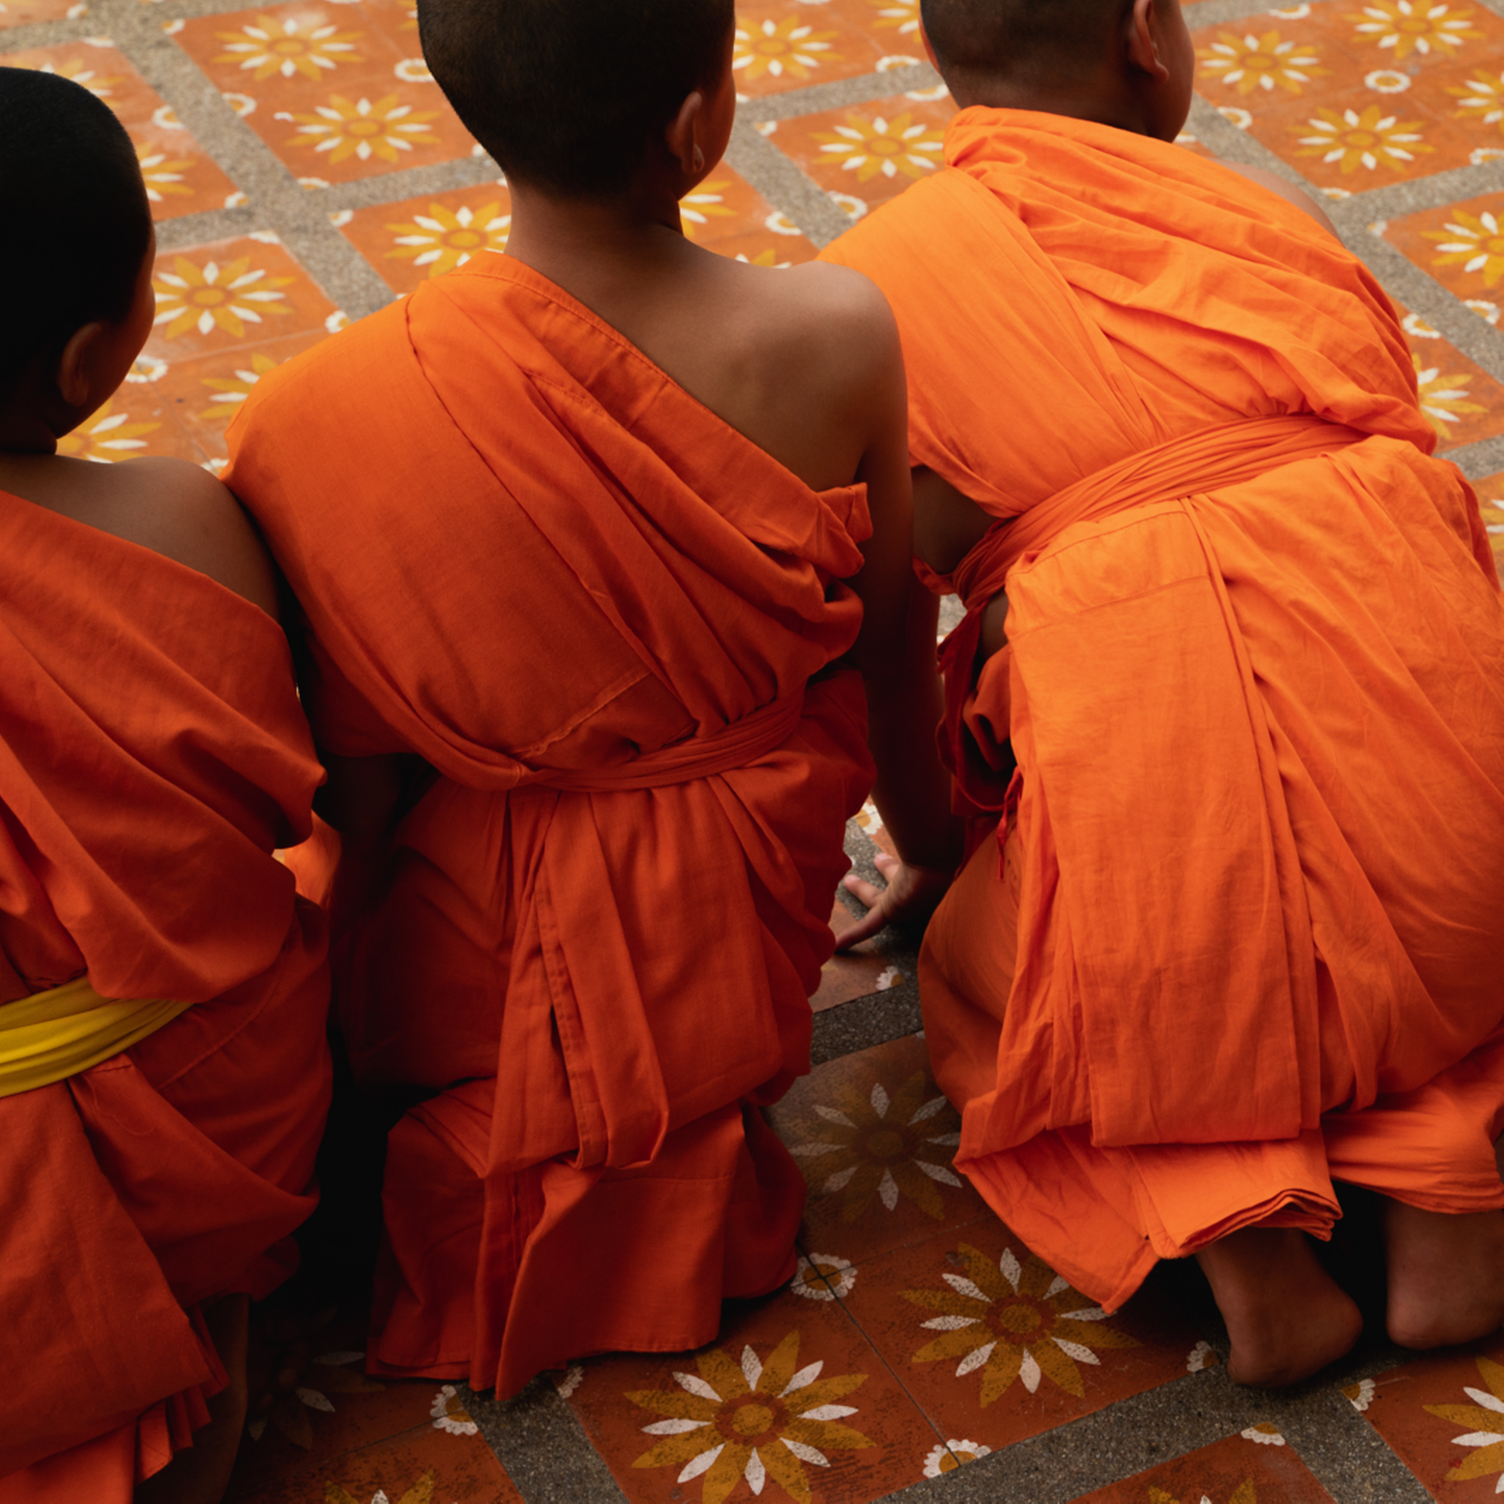 Grupo de monjes jóvenes tailandeses de espaldas con túnicas color azafrán